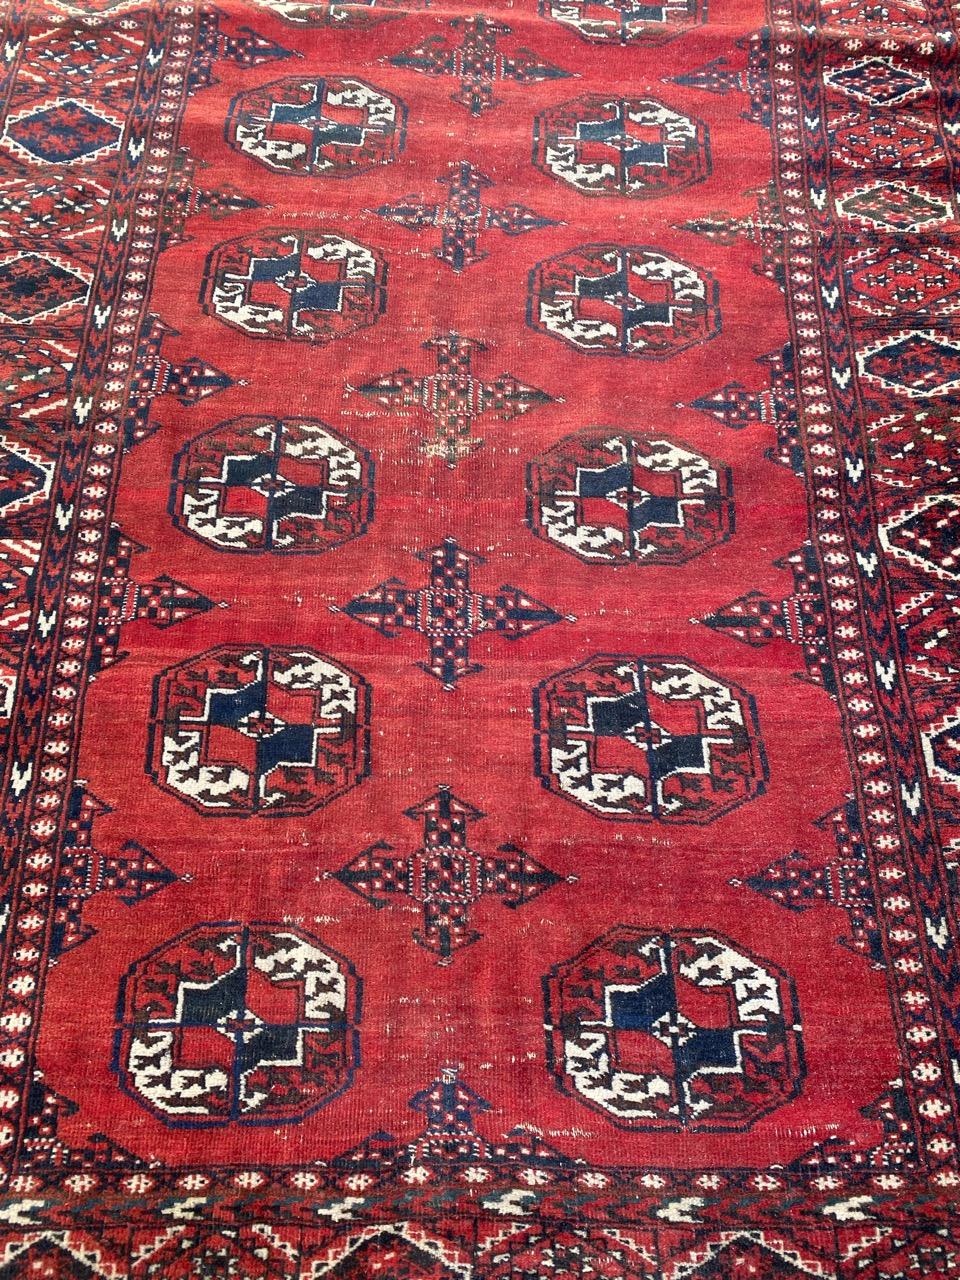 Schöner turkmenischer afghanischer Teppich mit schönem Bokhara-Muster und schönen natürlichen Farben, komplett handgeknüpft mit Wollsamt auf Wollfond.

✨✨✨
